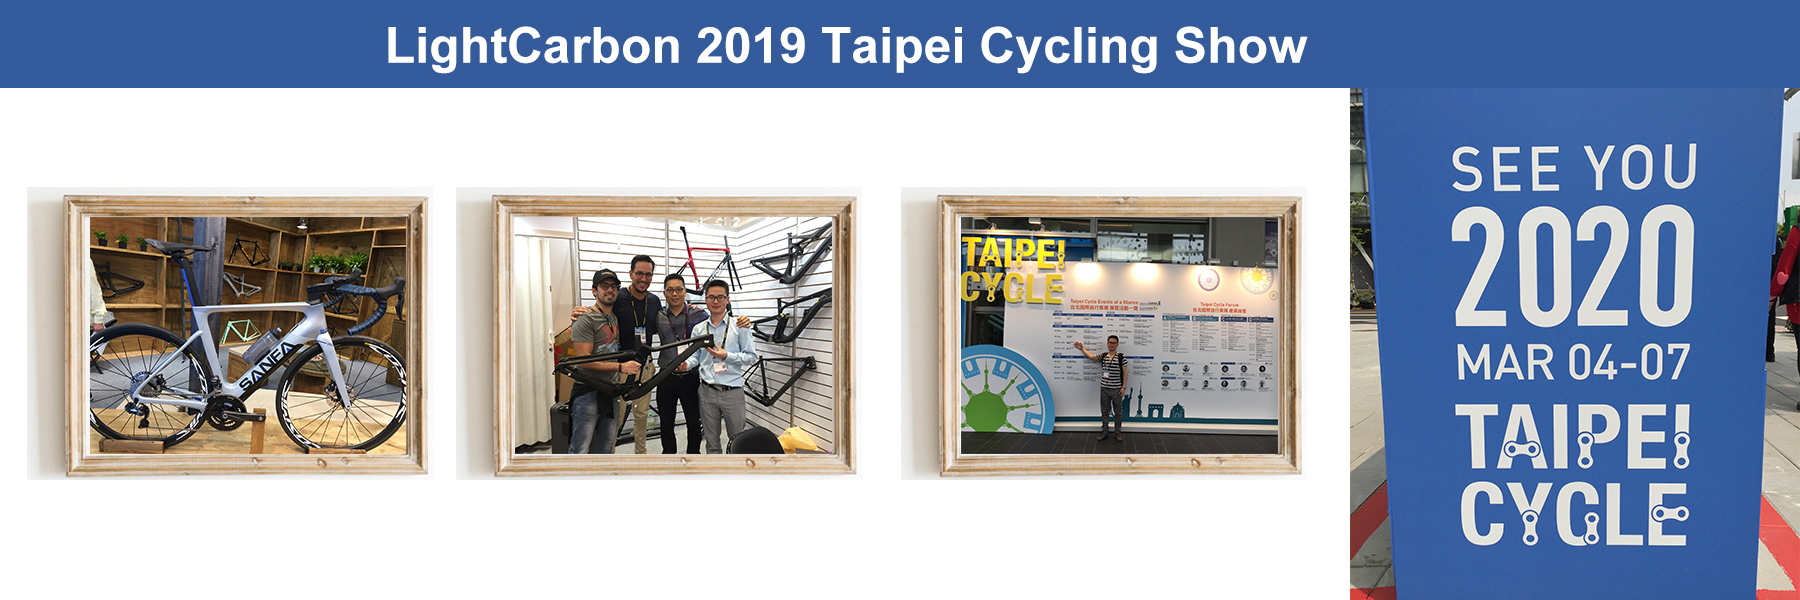 Espectáculo de ciclismo de carbono ligero de Taipei 2019